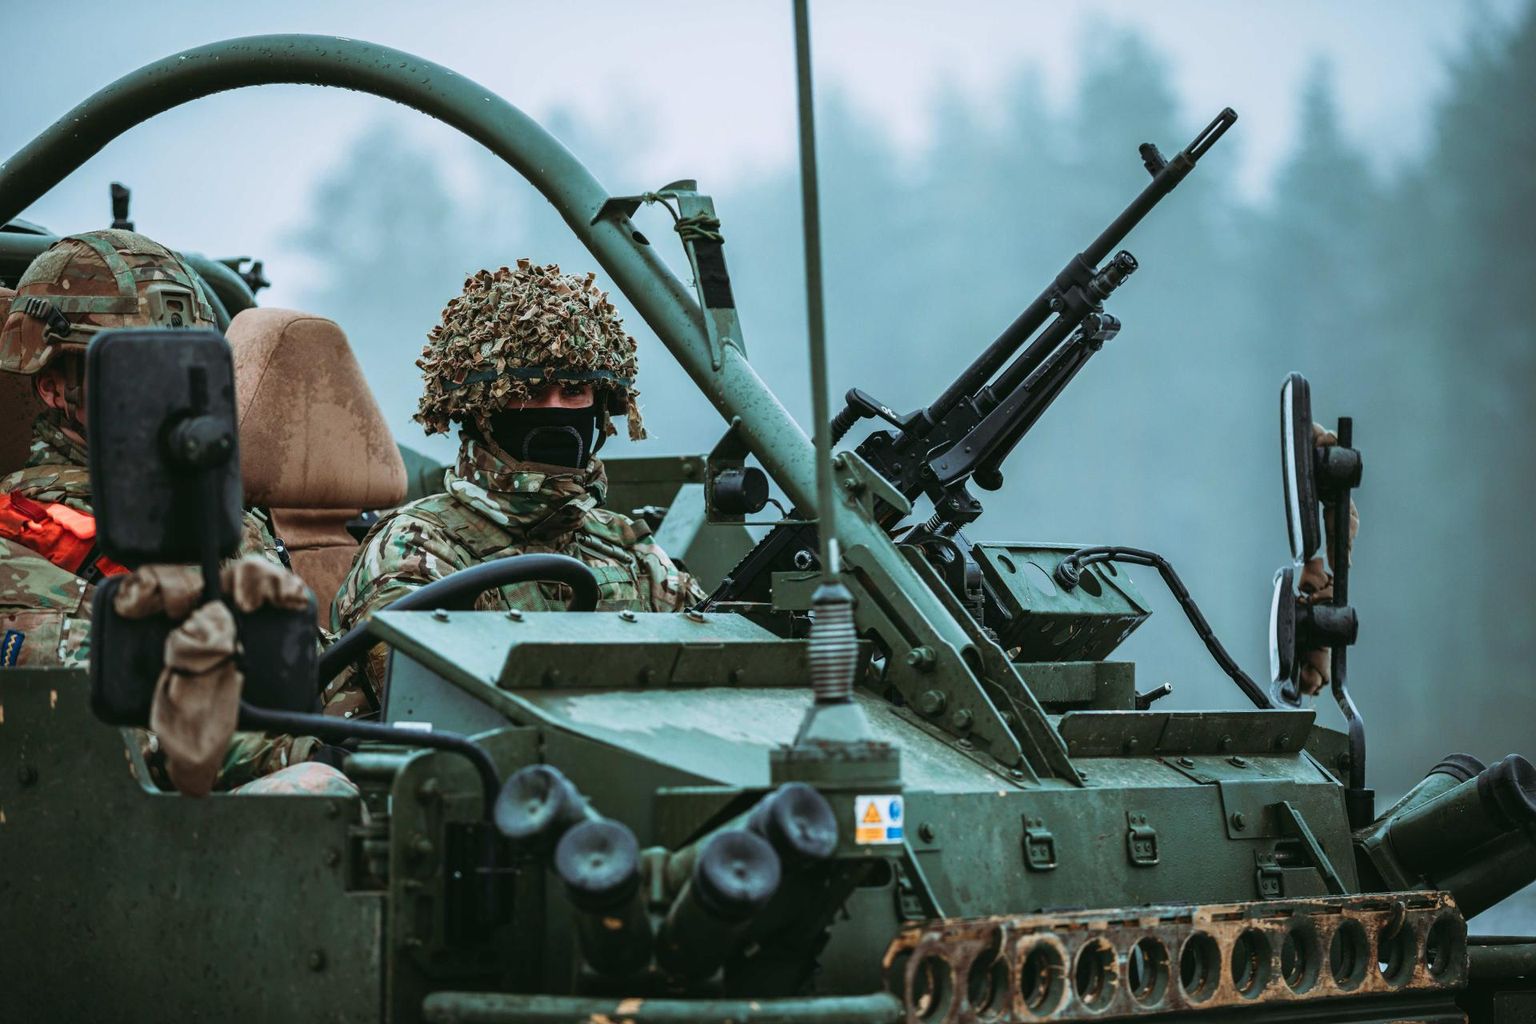 Ühendkuningriik, kes on Eestisse eelpaigutatud NATO pataljoni juhtriik, on sama missiooni raames sõdureid saatnud ka Poolasse.